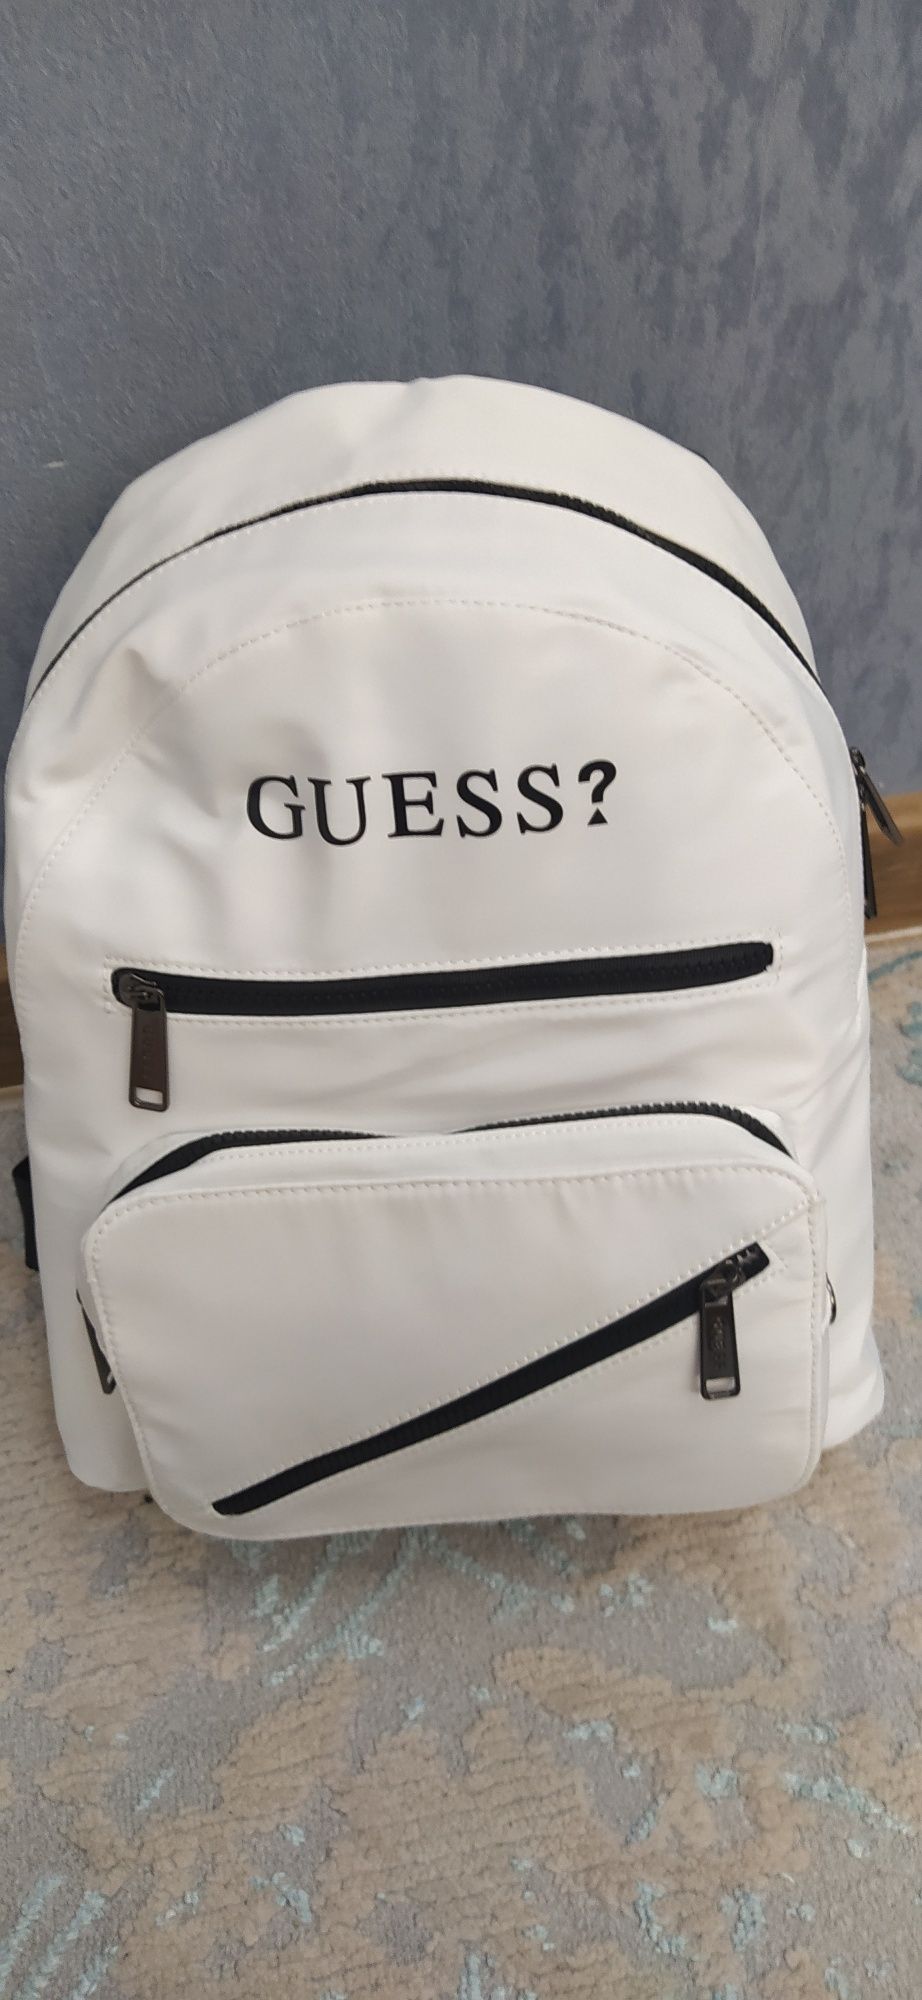 Рюкзак GUESS для мужчины и женщины.